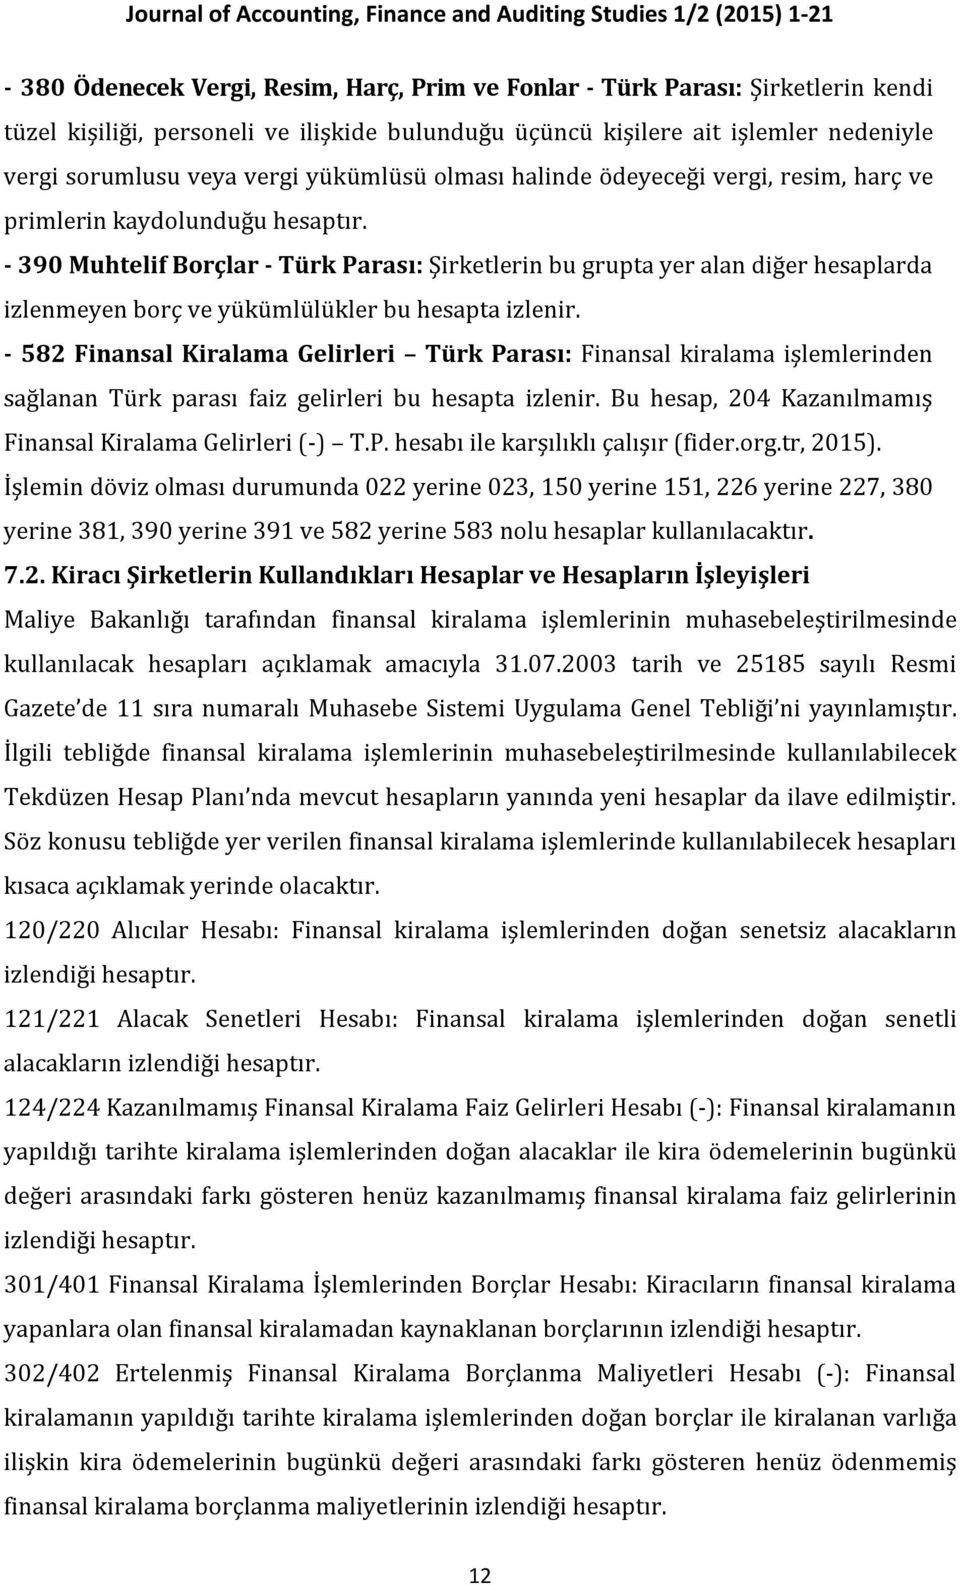 - 390 Muhtelif Borçlar - Türk Parası: Şirketlerin bu grupta yer alan diğer hesaplarda izlenmeyen borç ve yükümlülükler bu hesapta izlenir.